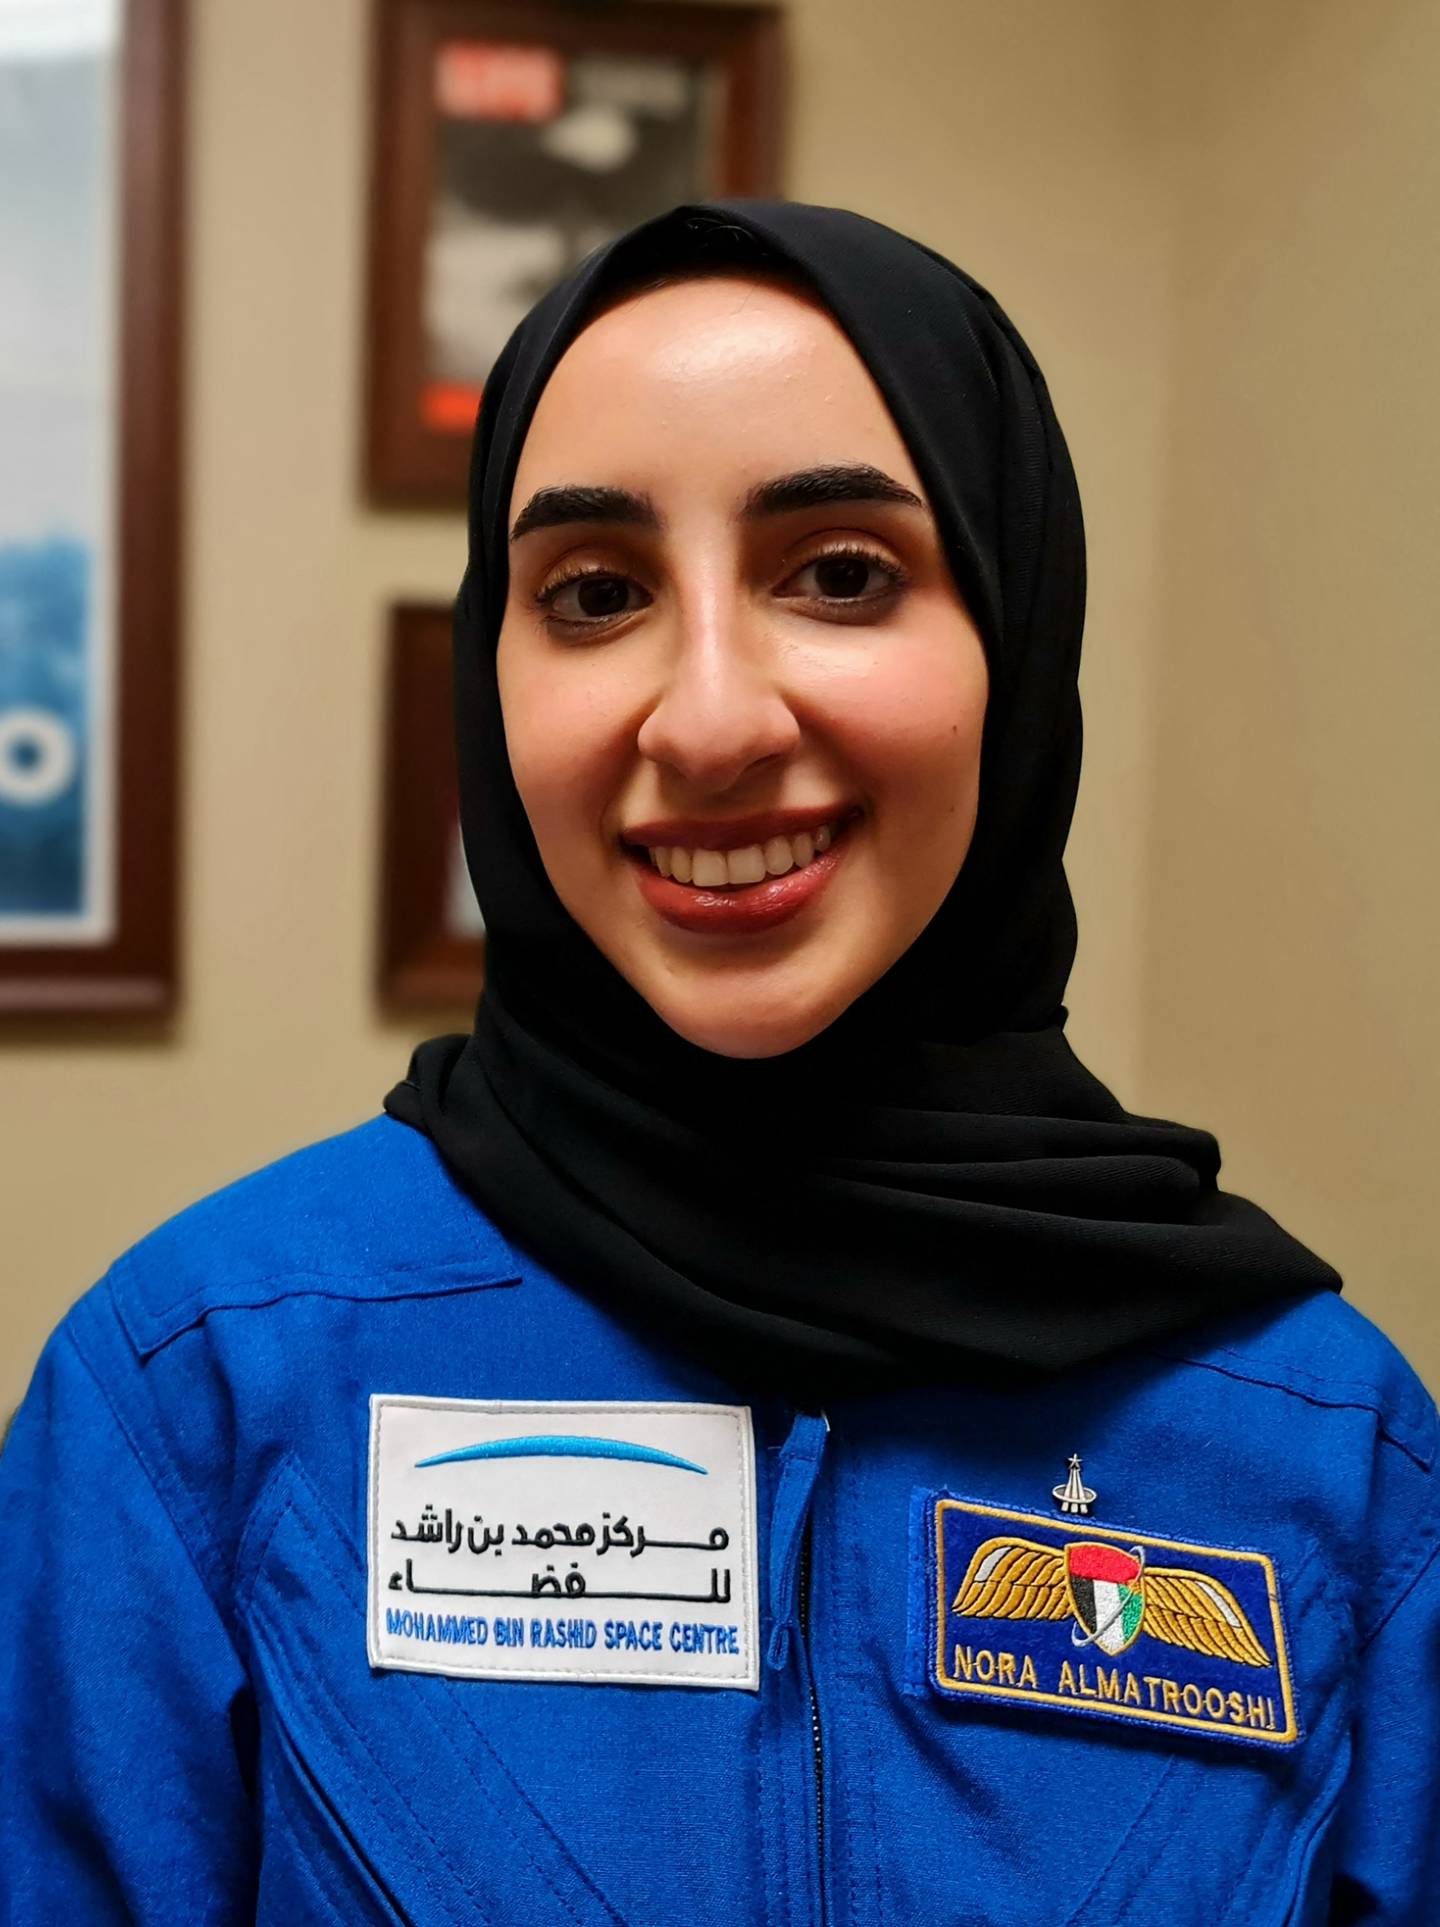 Nora Almatrooshi, la primera mujer astronauta de los Emiratos Árabes Unidos graduada de la NASA.